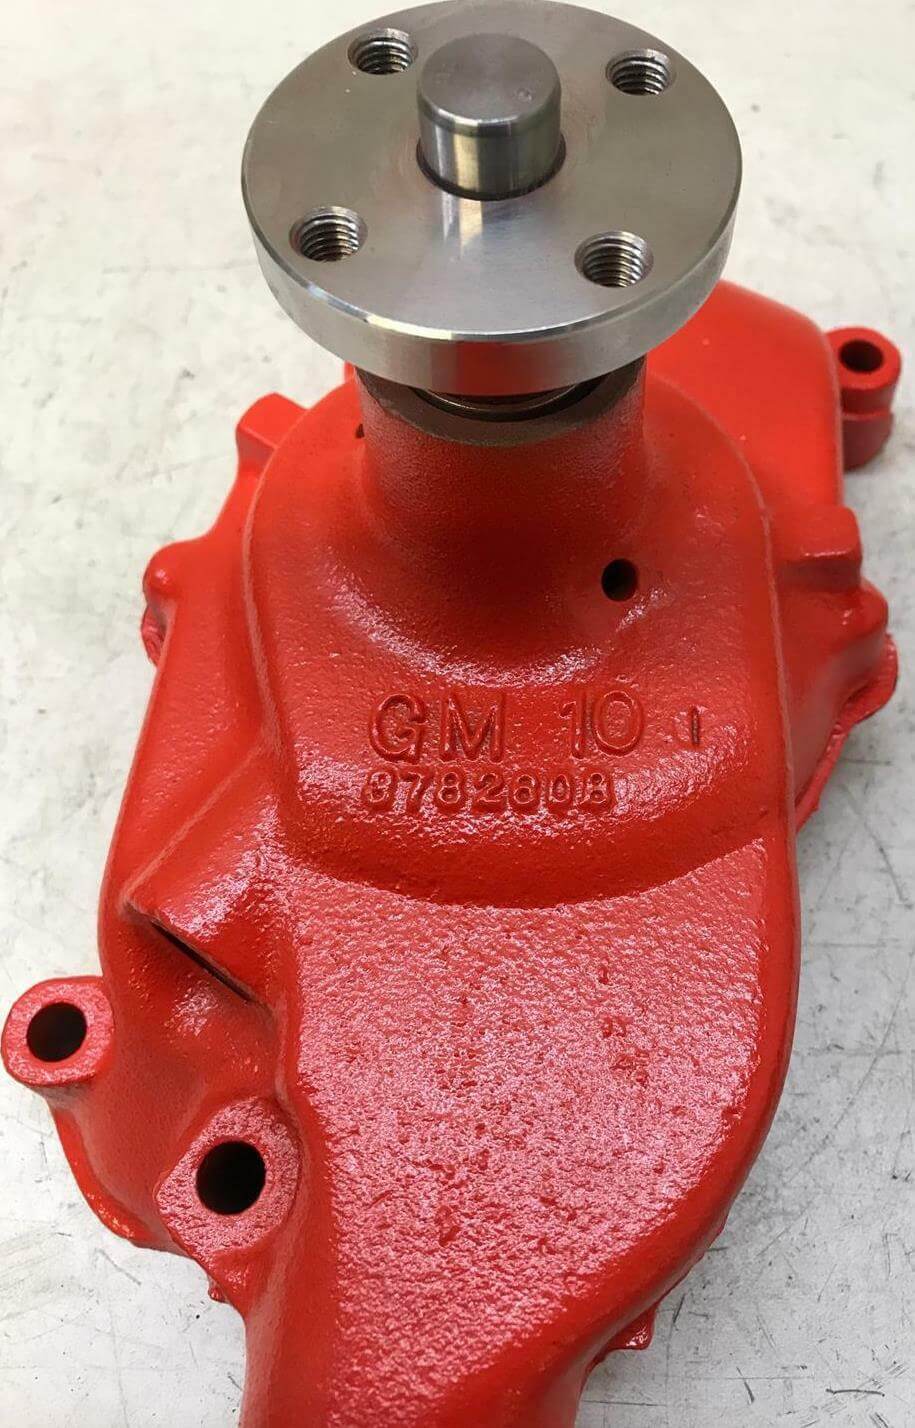 Automotive Water Pump - Rebuilt 1962-64 Chevrolet Corvette Impala water pump 327ci V8 3782608 No date - Marvelous Parts